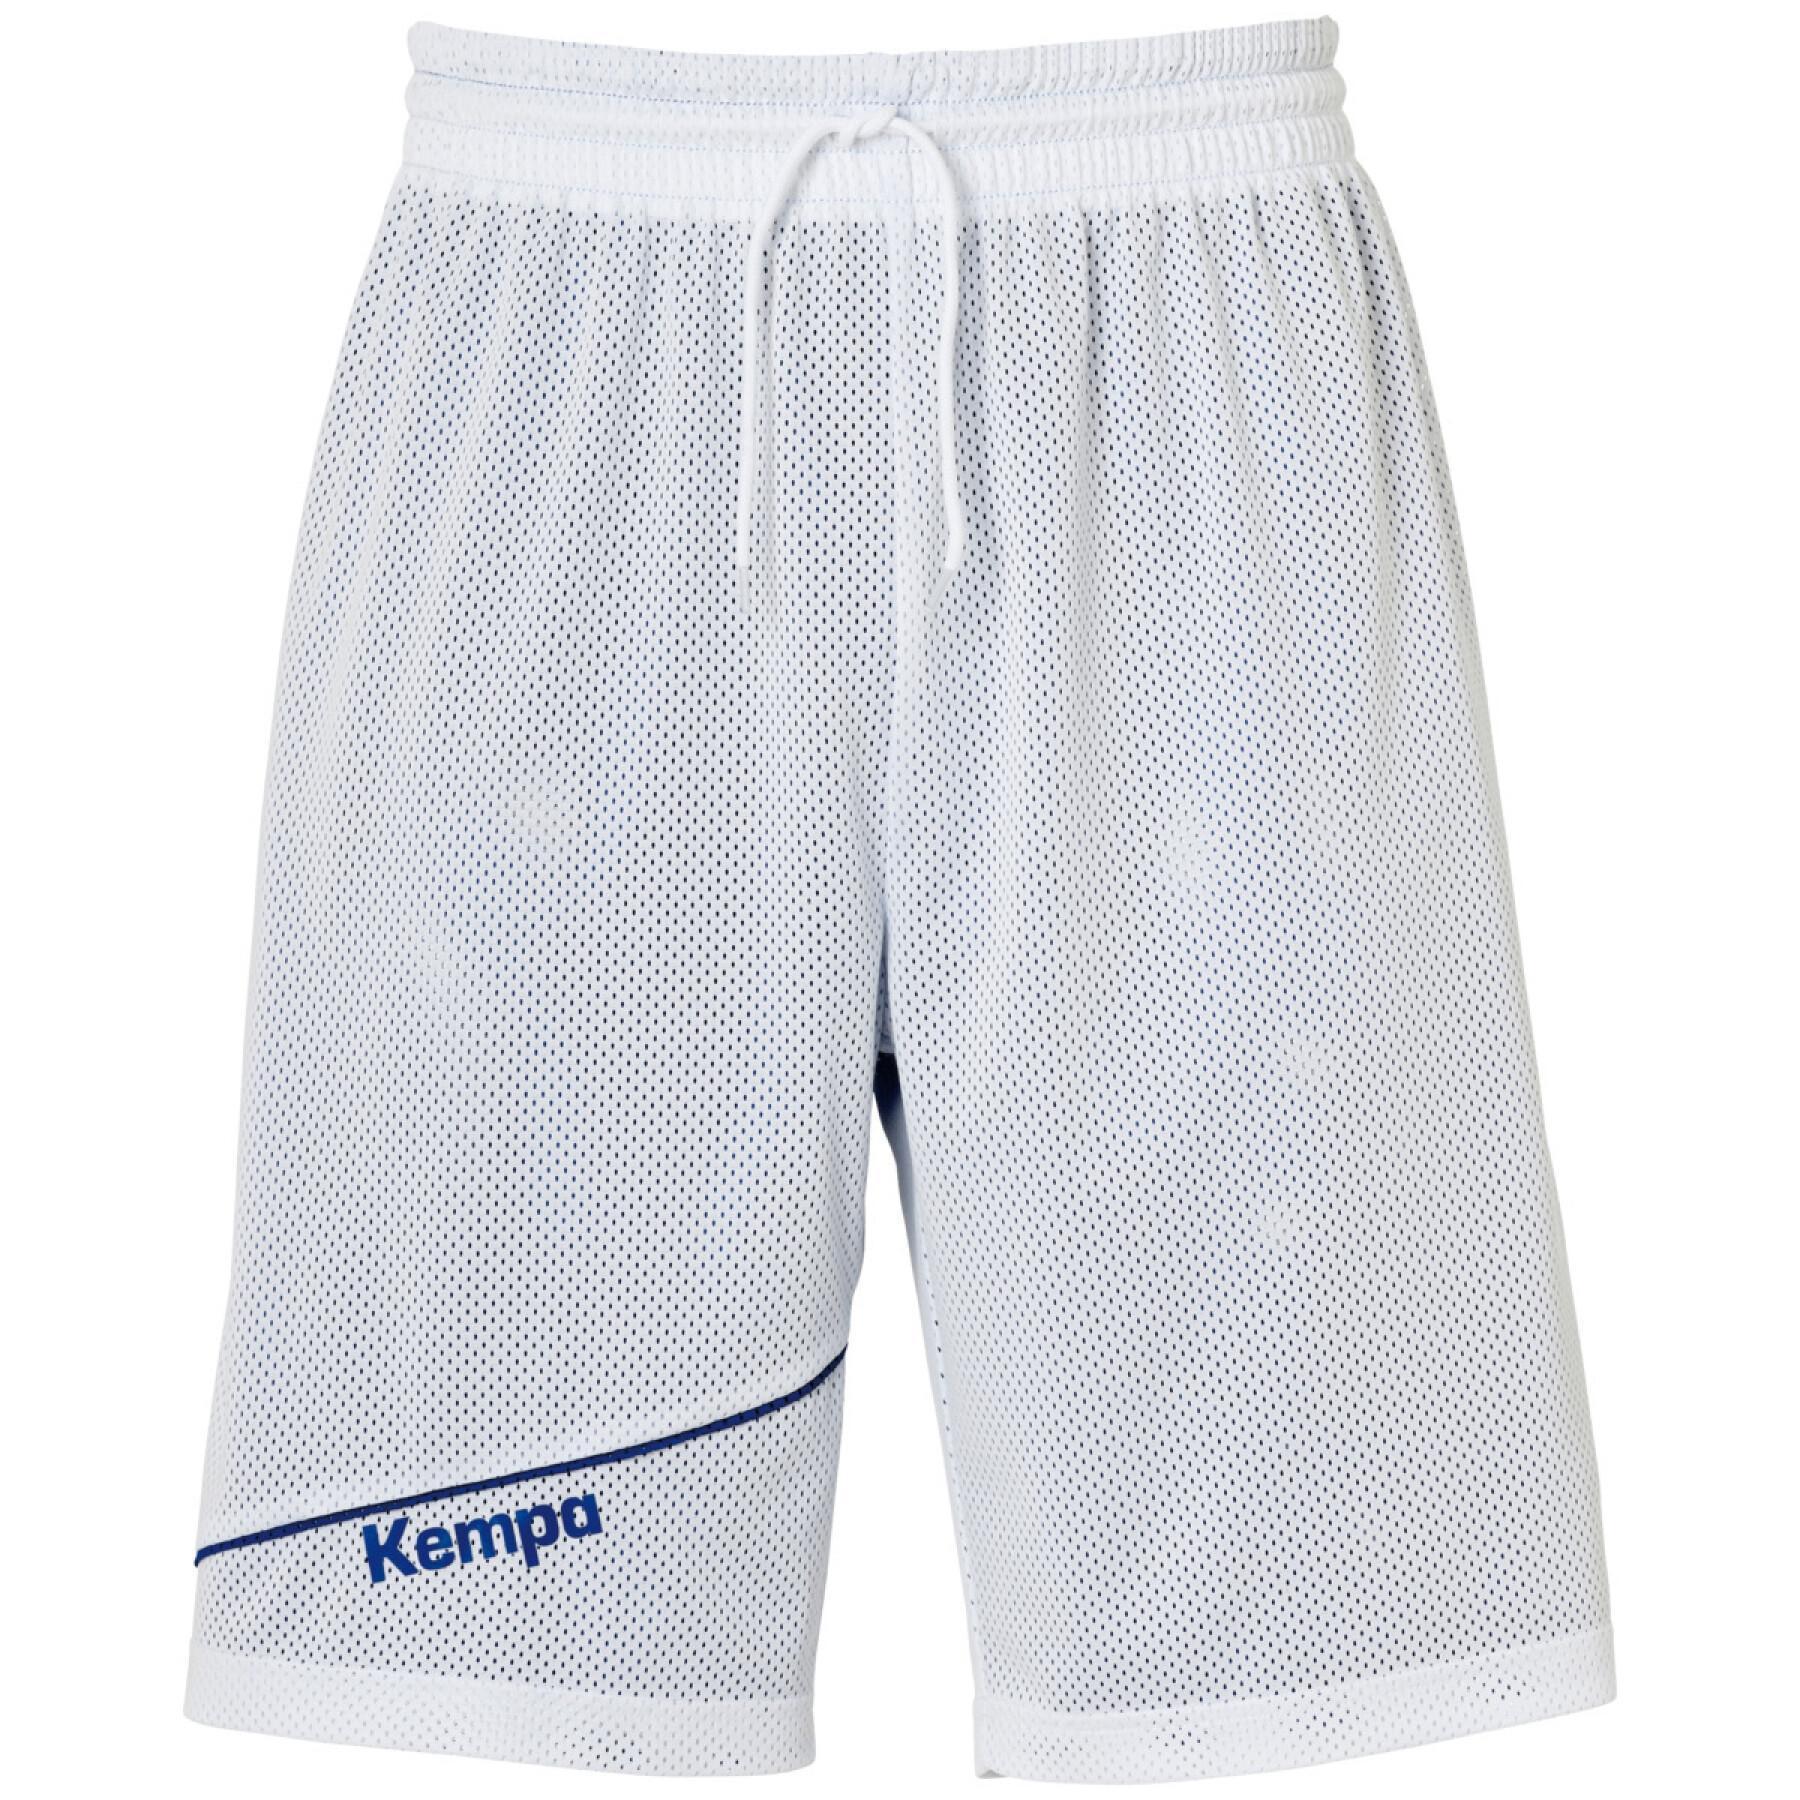 Reversible shorts for children Kempa Player